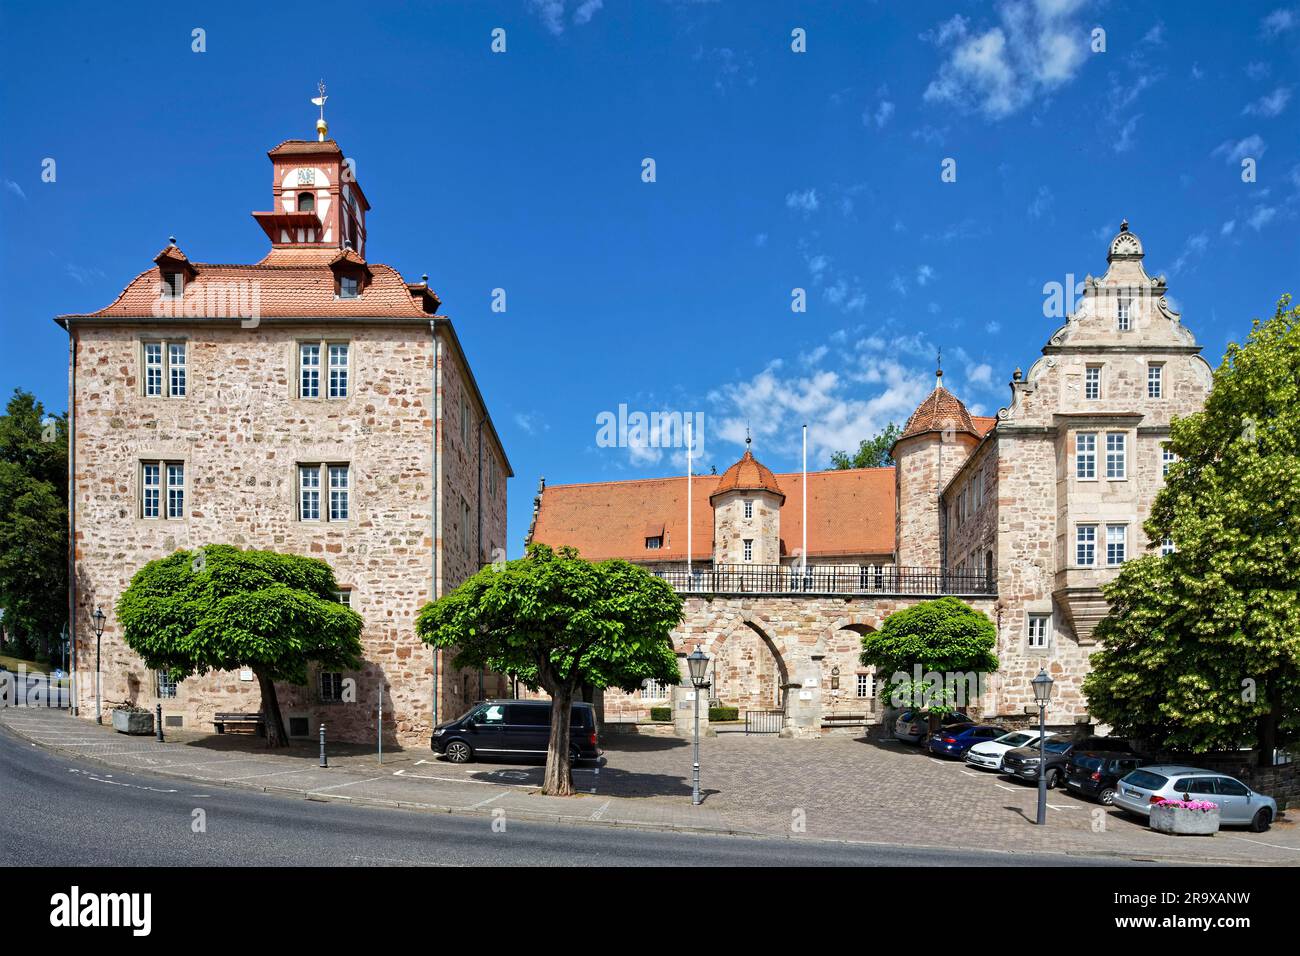 Château de Landgrave Eschwege, Renaissance, construit en 1386 par Landgrave Balthasar de Thuringe, tour à colombages en haut à gauche, avec horloge, horloge artistique Banque D'Images